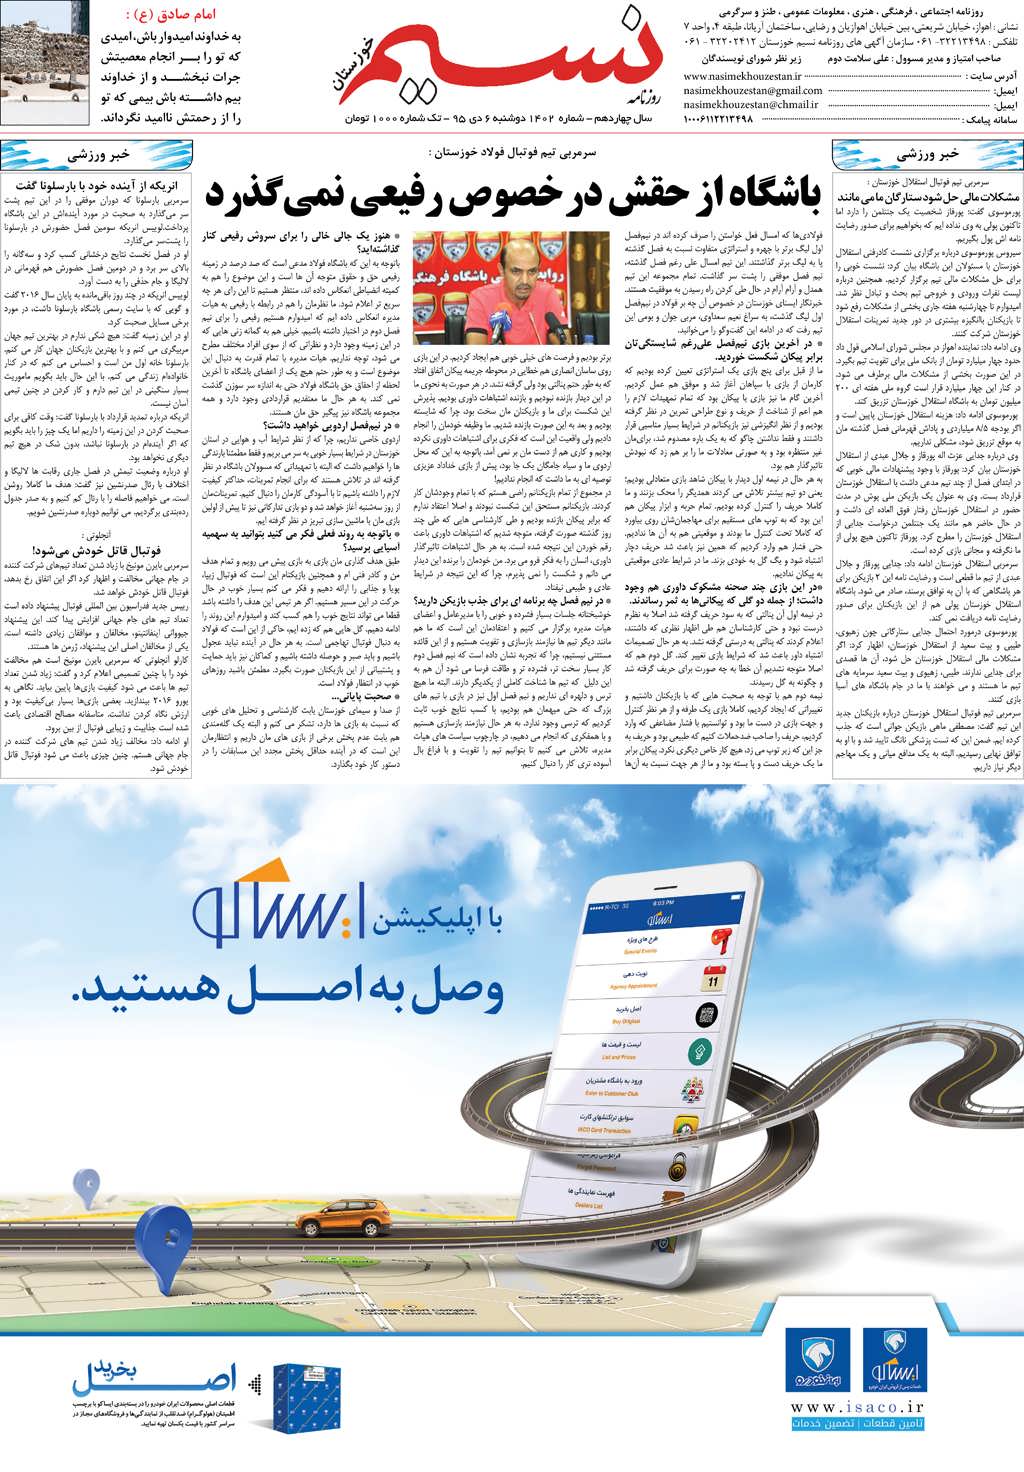 صفحه آخر روزنامه نسیم شماره 1402